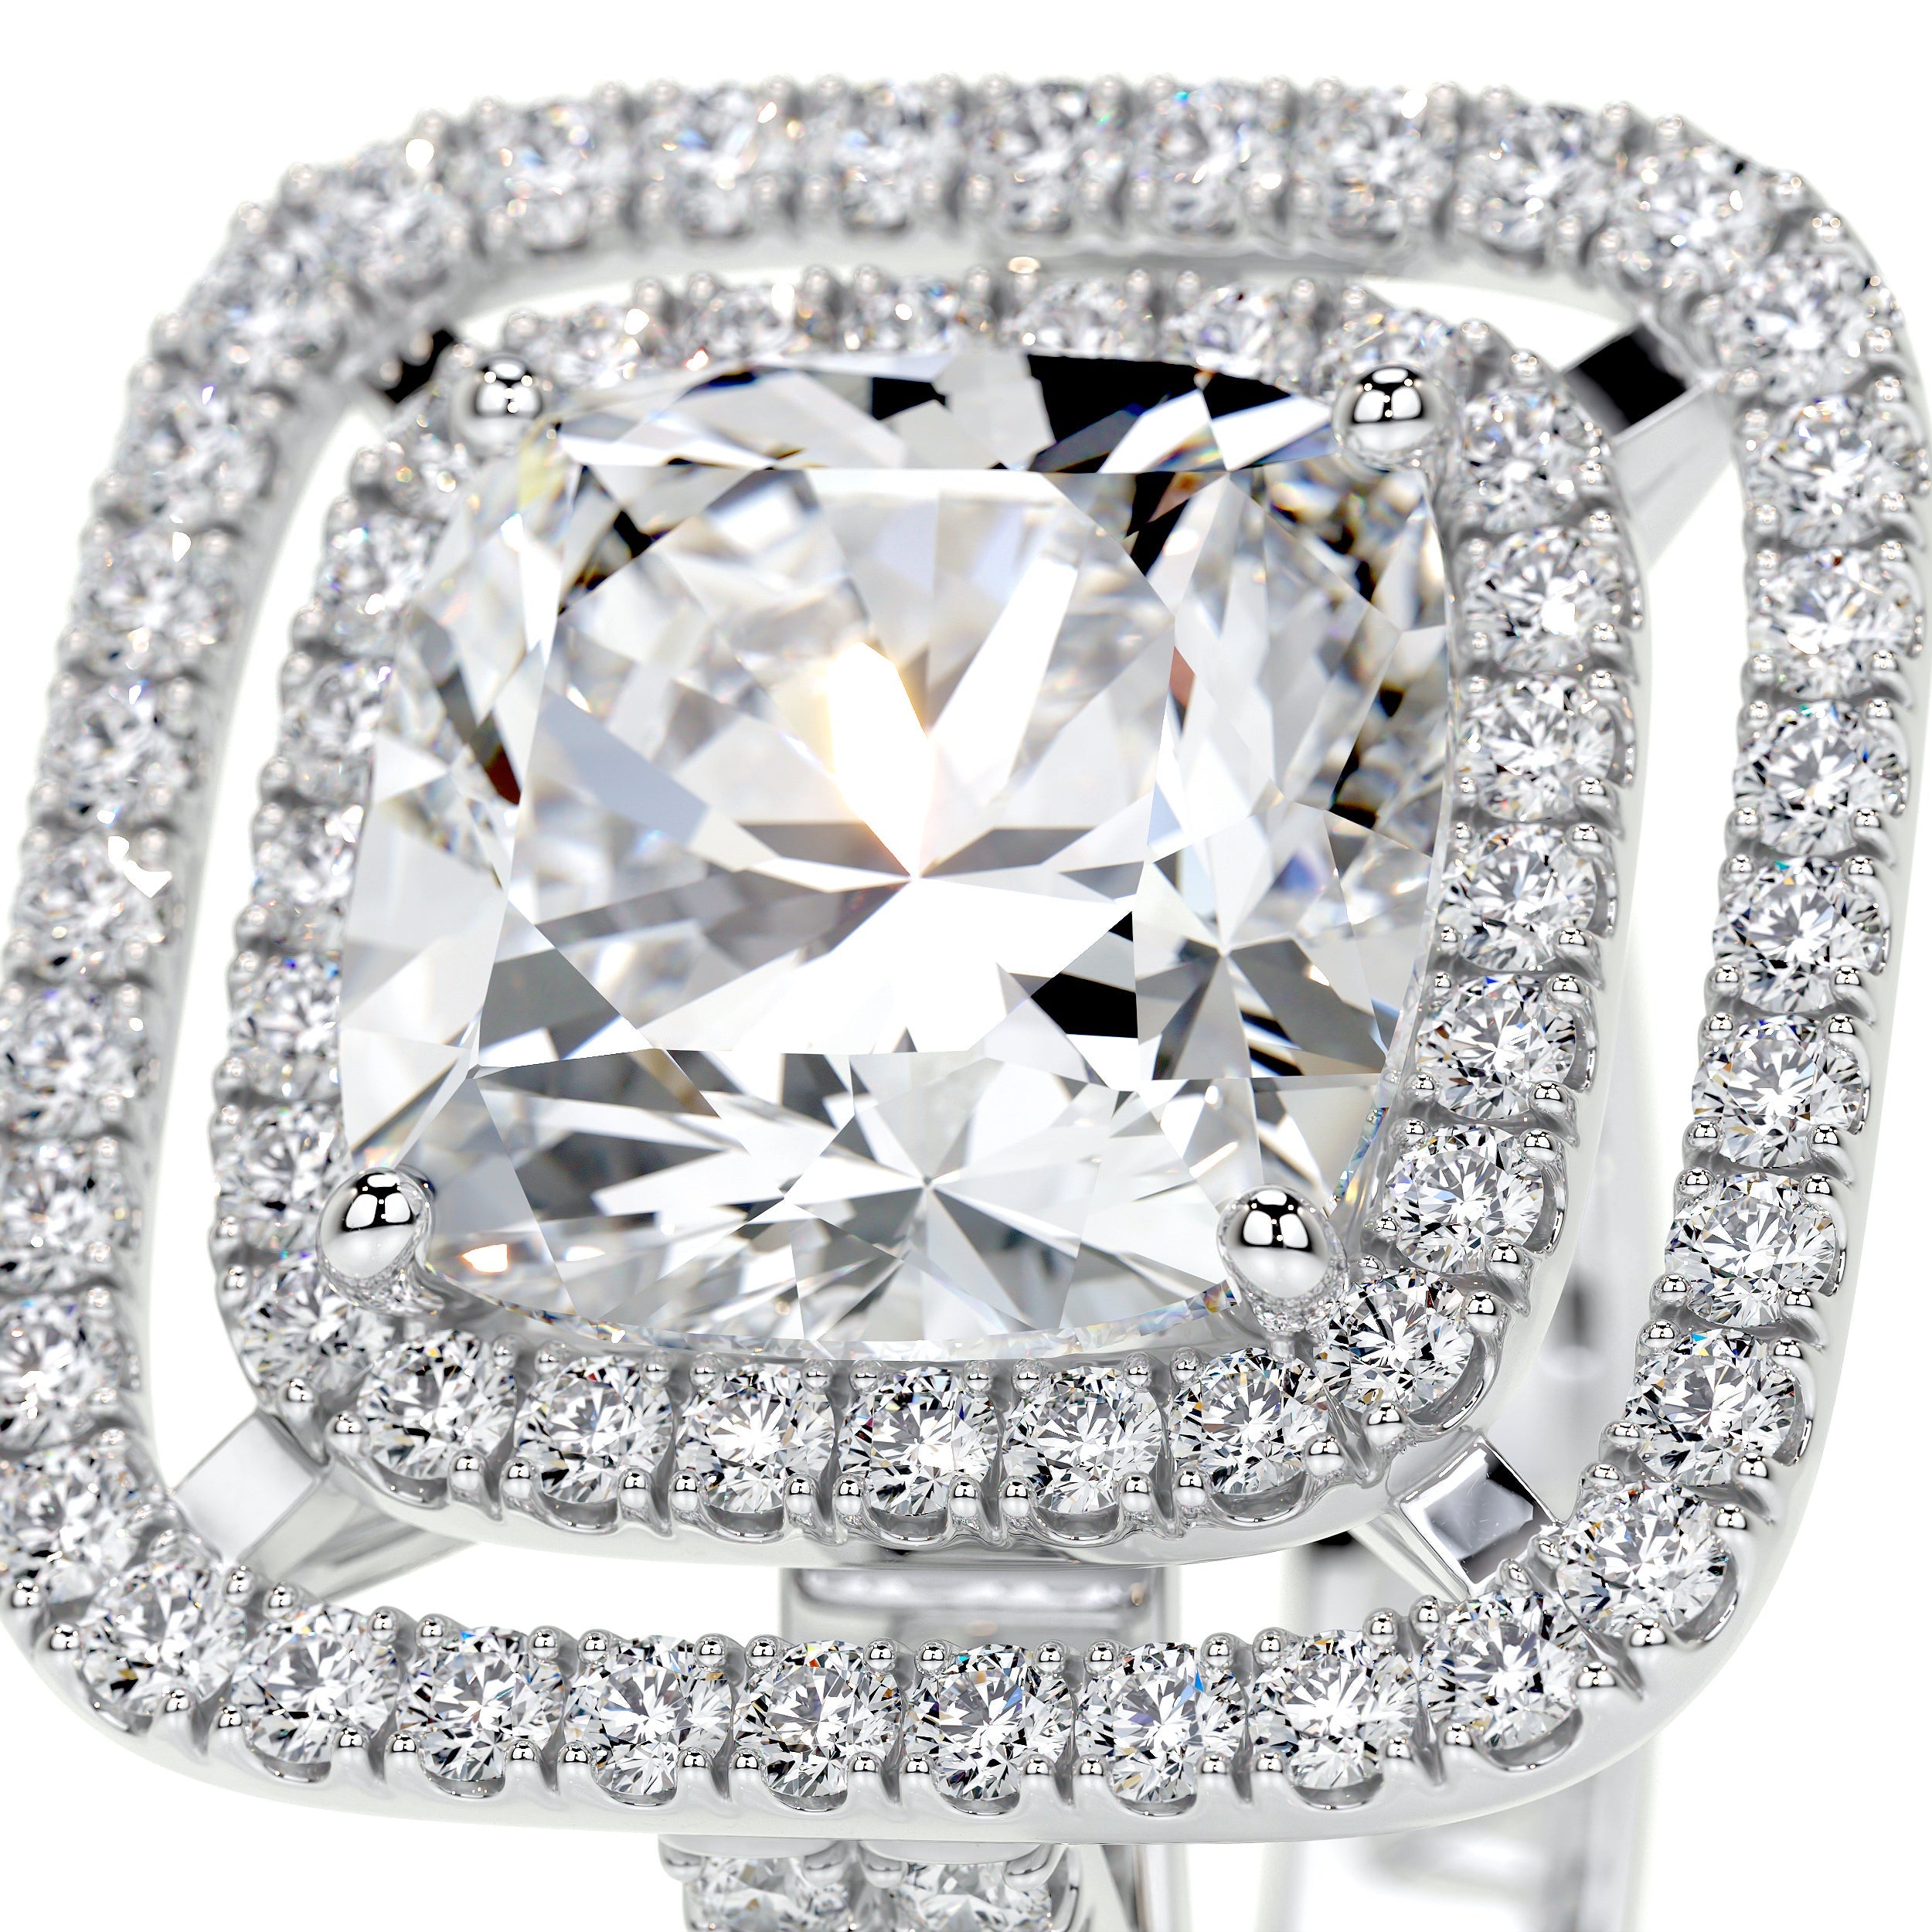 Piper Lab Grown Diamond Ring   (4 Carat) - 14K White Gold